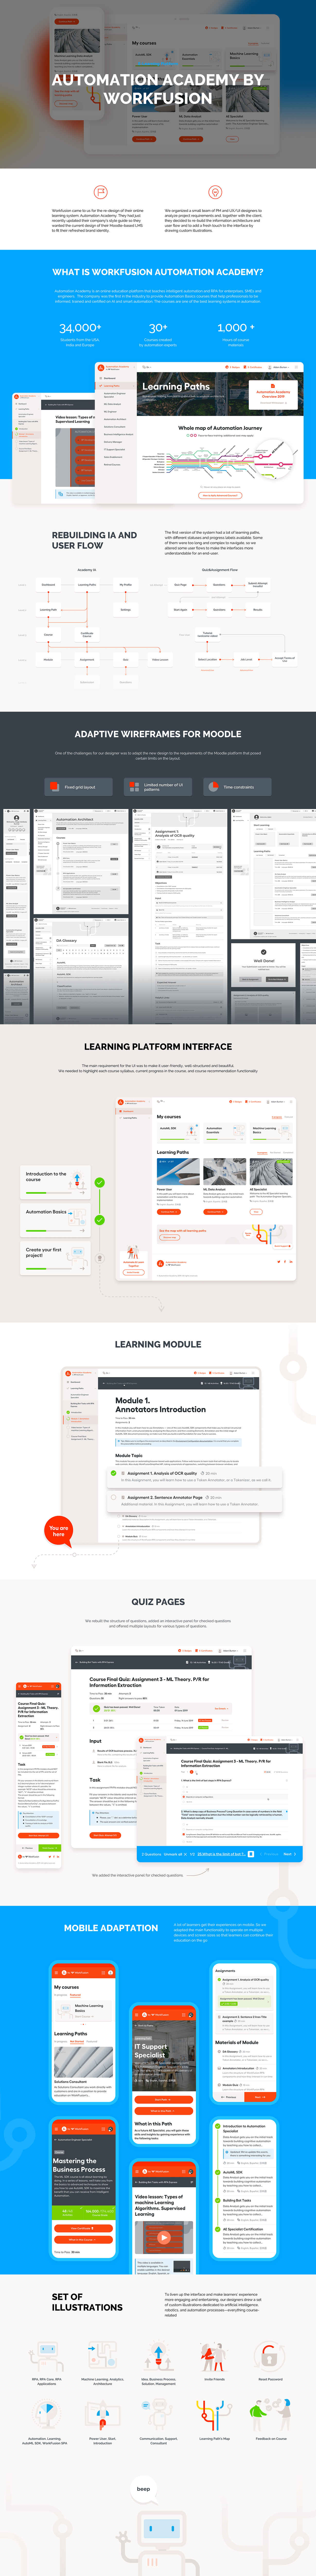 ui design UX design Moodle eLearning LMS Online Learning System edtech graphic design  illustrations web app